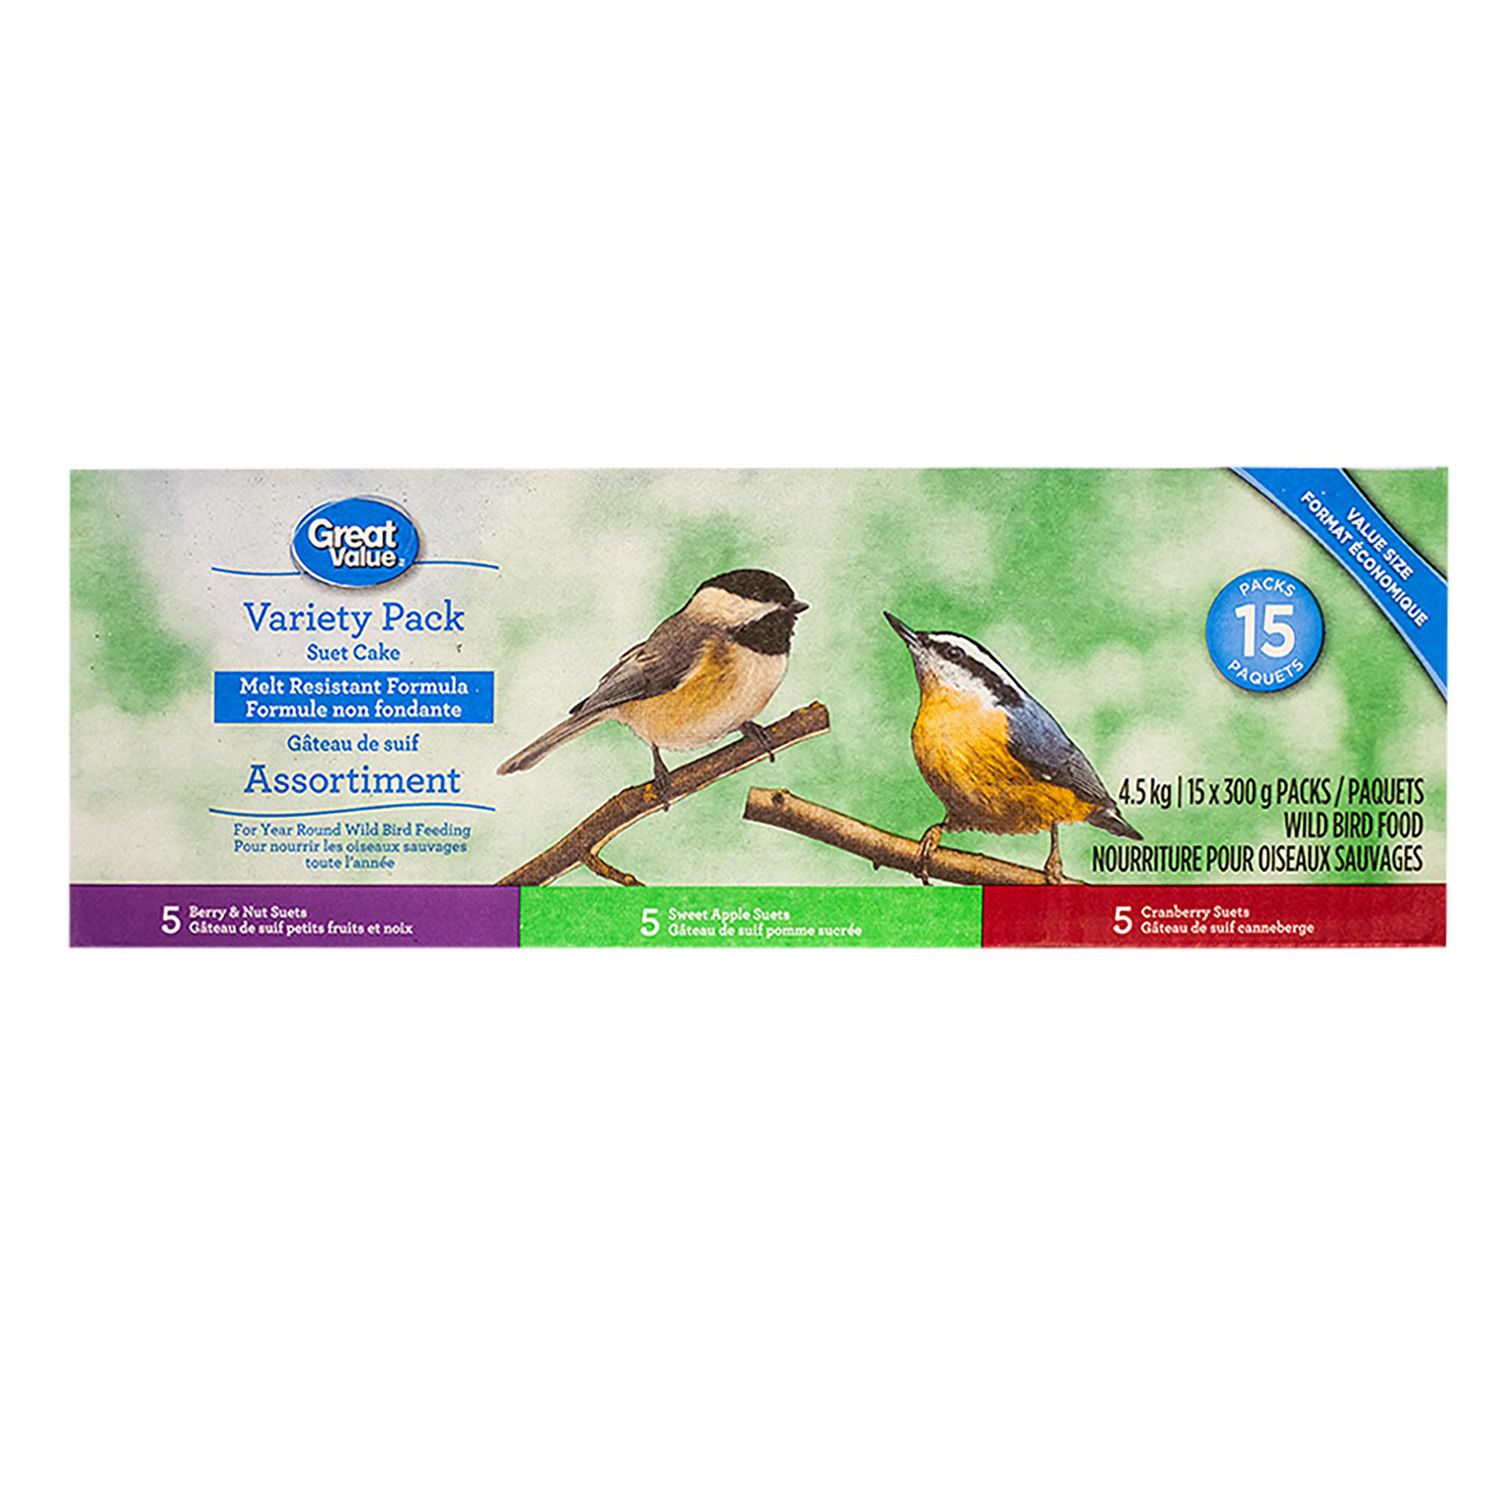 HERITAGE ACRES Nourriture Blue Label pour oiseaux sauvages, 18,1 kg 403-001